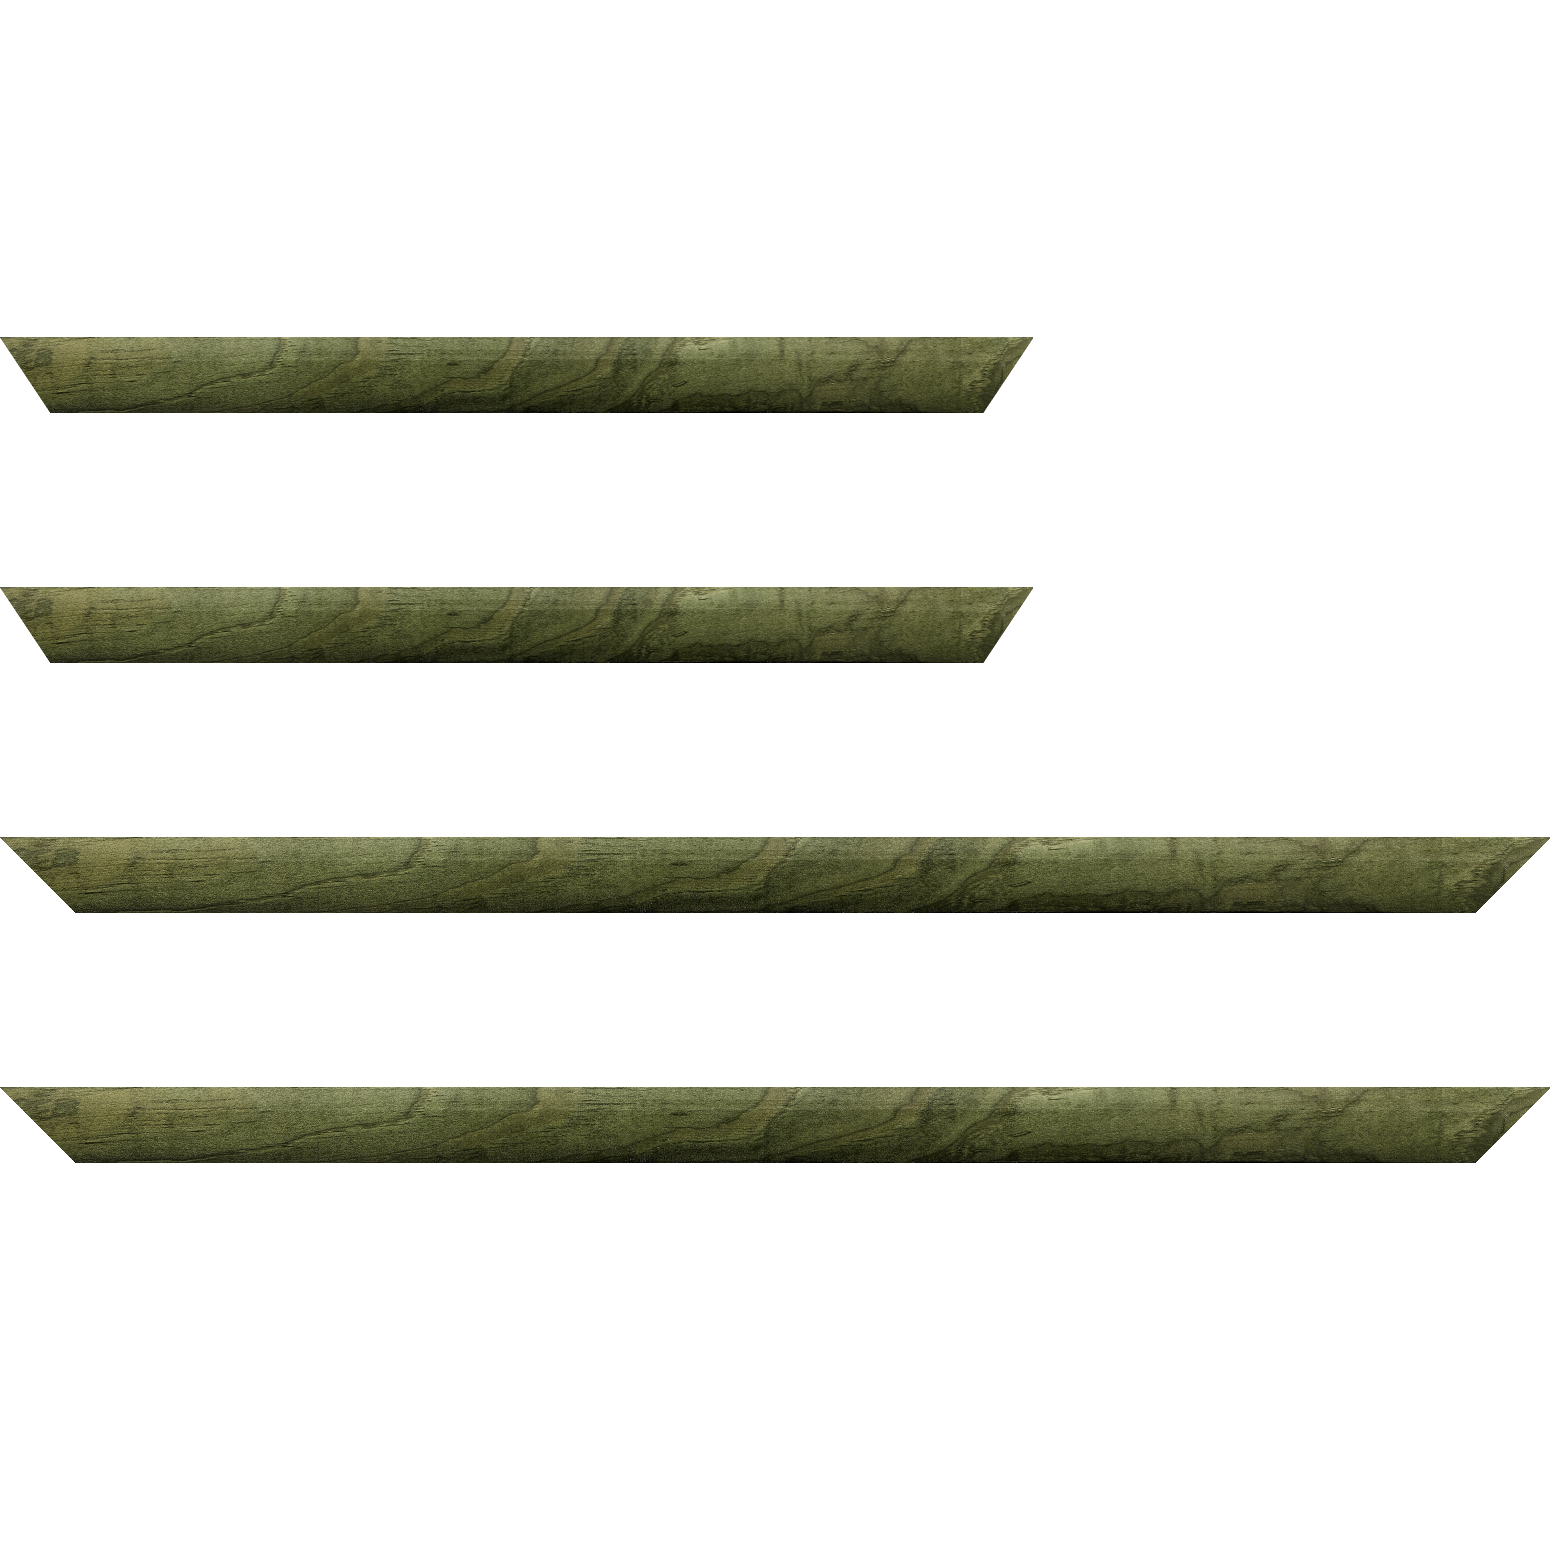 Baguette bois profil arrondi en pente plongeant largeur 2.4cm couleur vert sapin finition vernis brillant,veine du bois  apparent (pin) ,